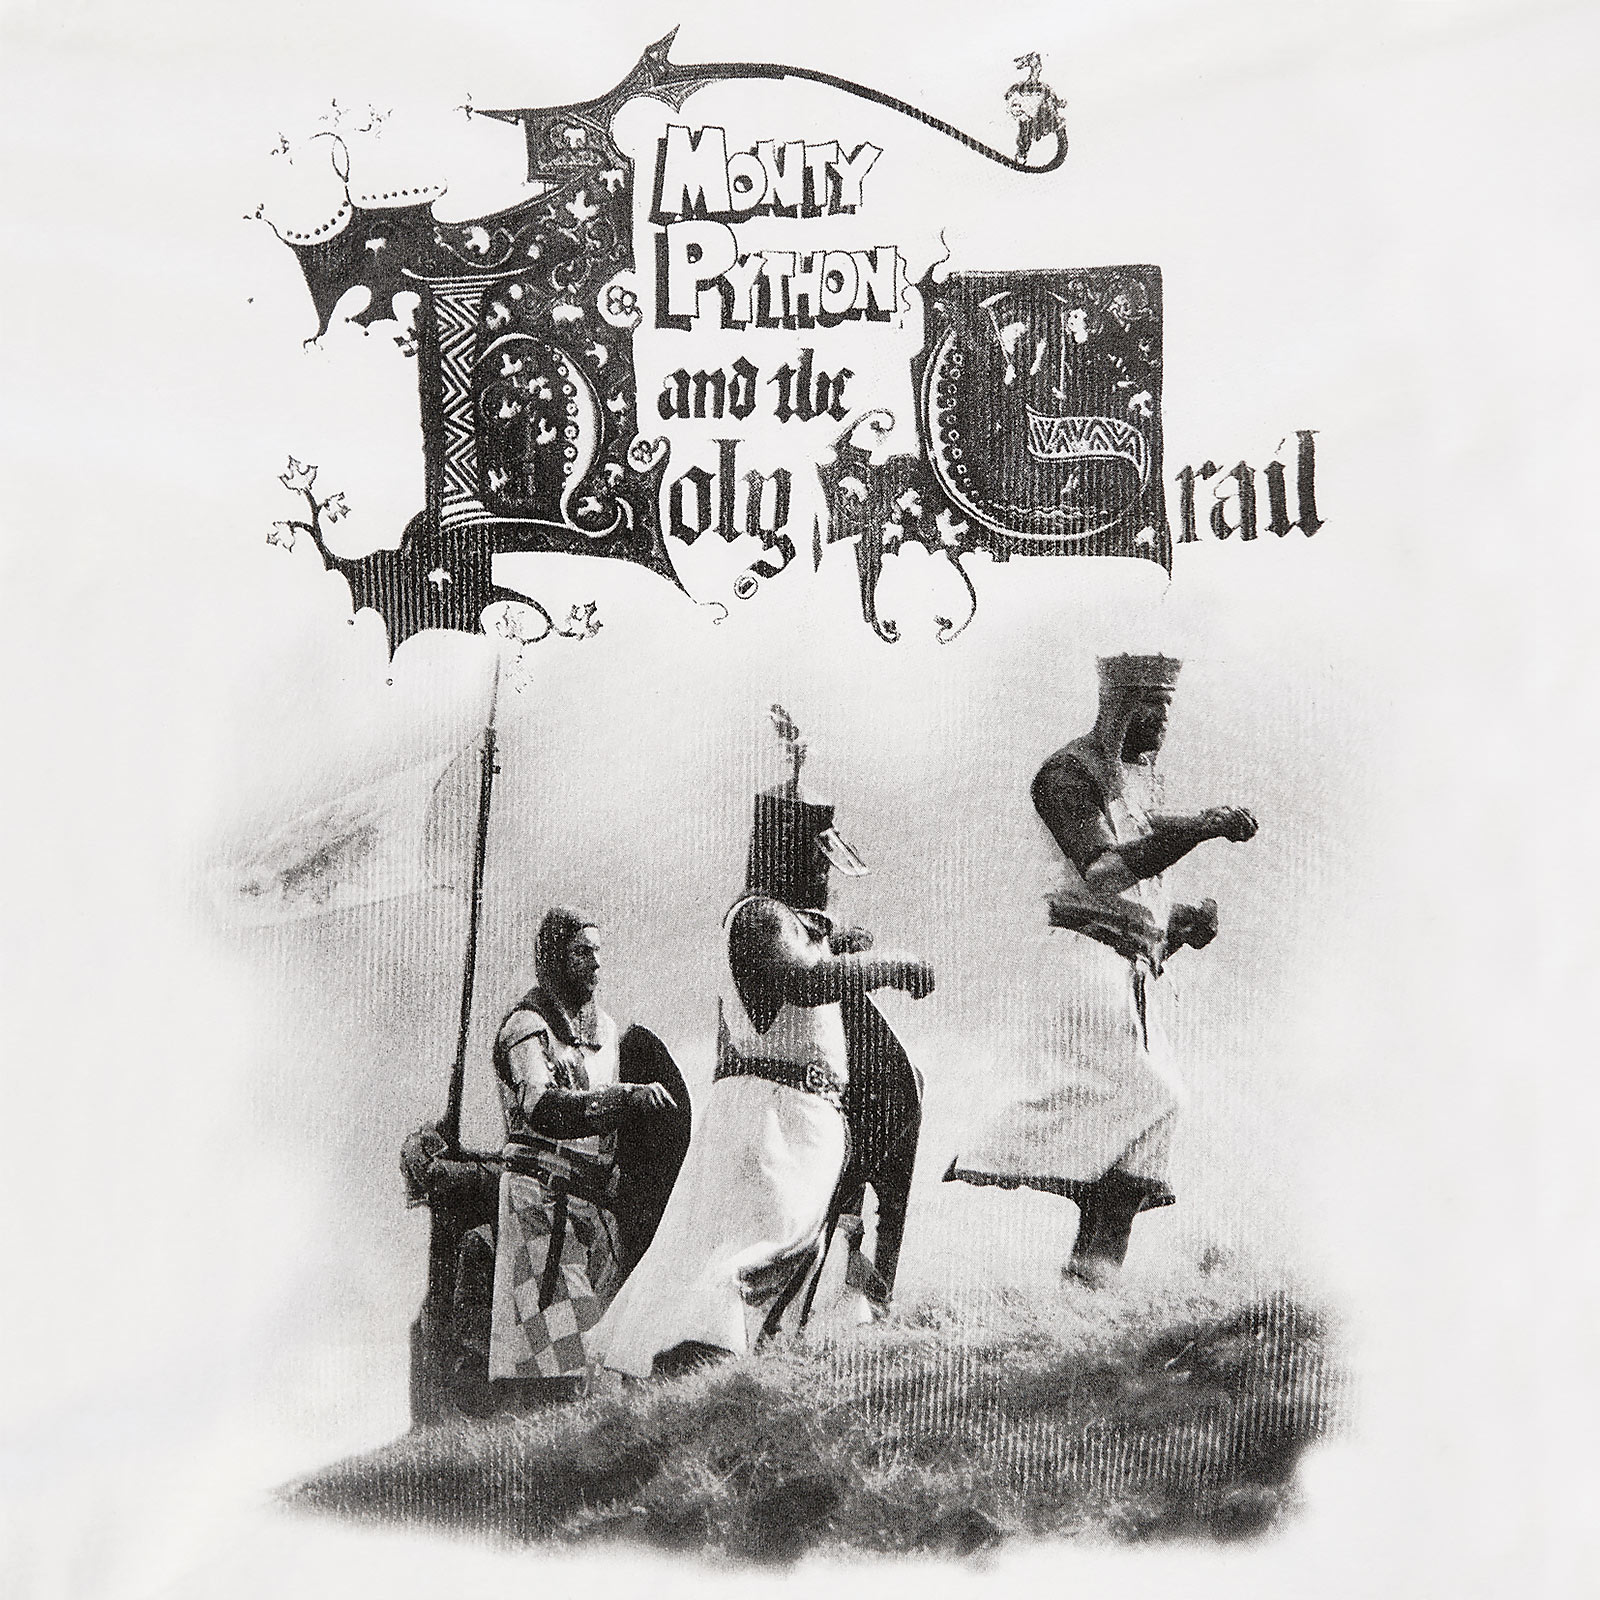 Monty Python - De Ridders van de Kokosnoot T-Shirt wit